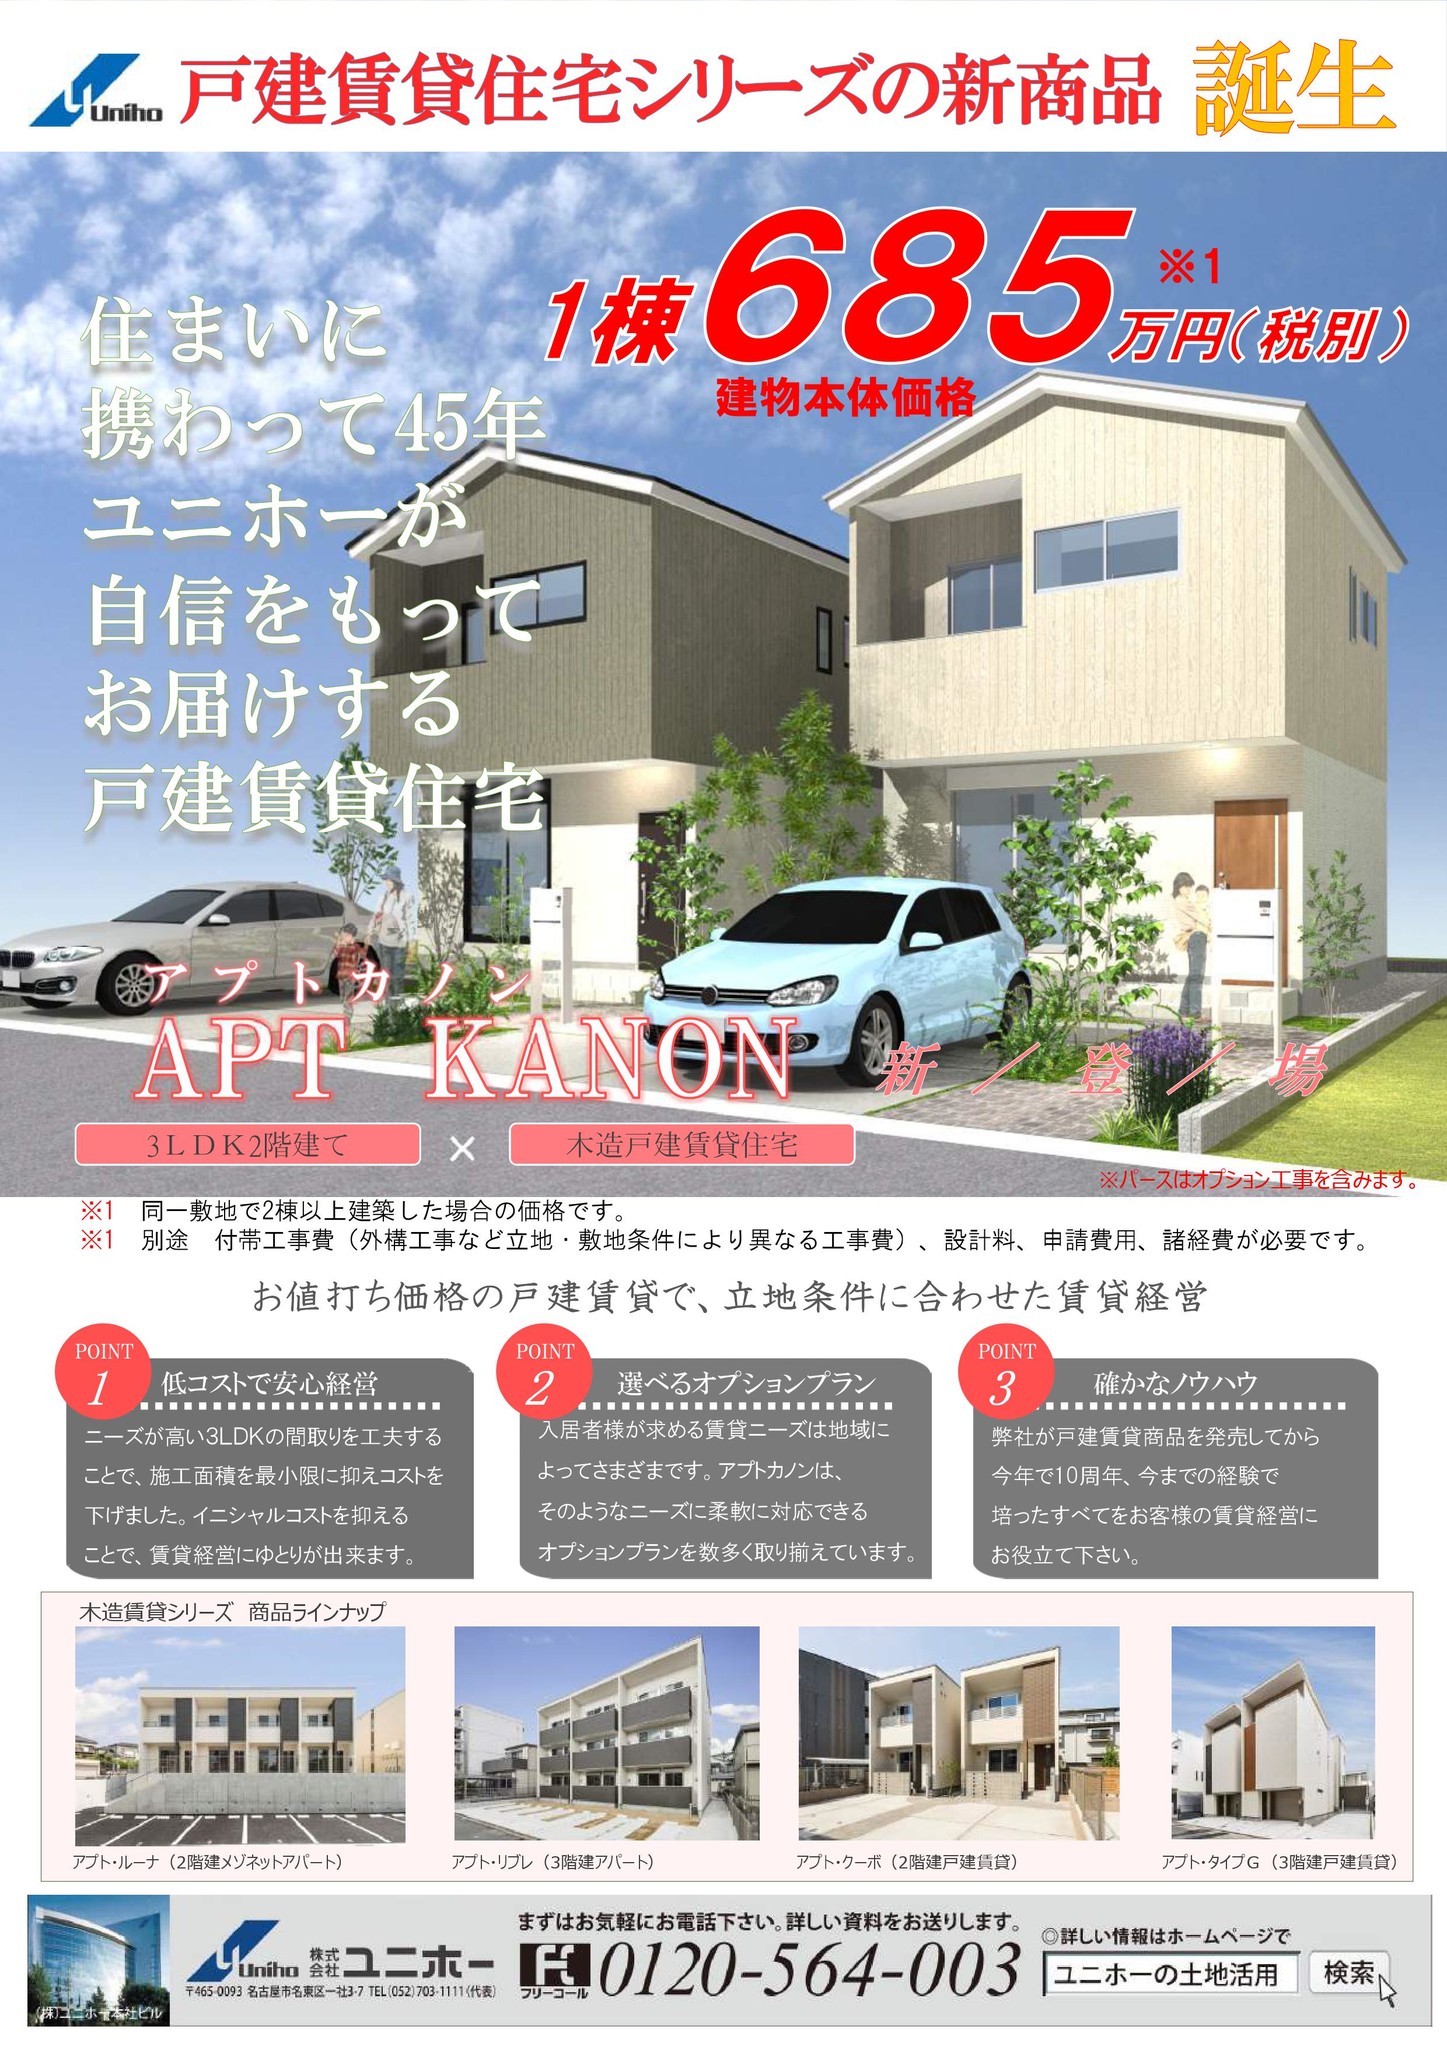 戸建賃貸住宅シリーズの新商品 アプト カノン 誕生 株式会社zenホールディングスのプレスリリース